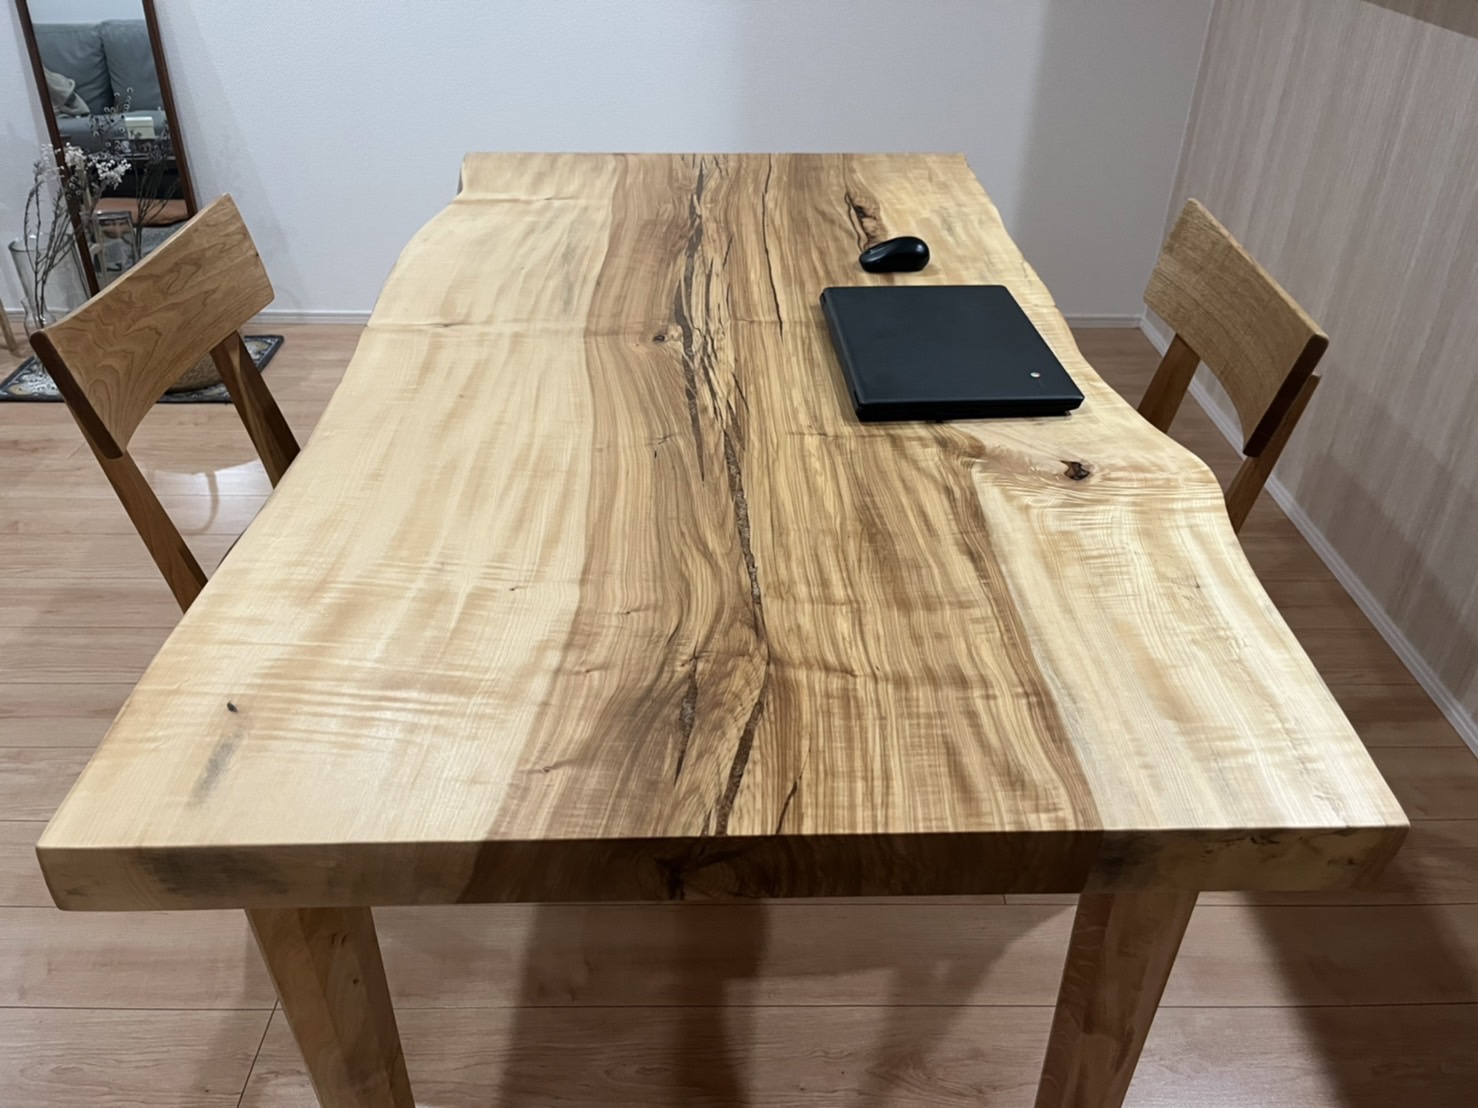 栃の木の一枚板のダイニングテーブル。僕のブログ作業場。 | きなこブログ